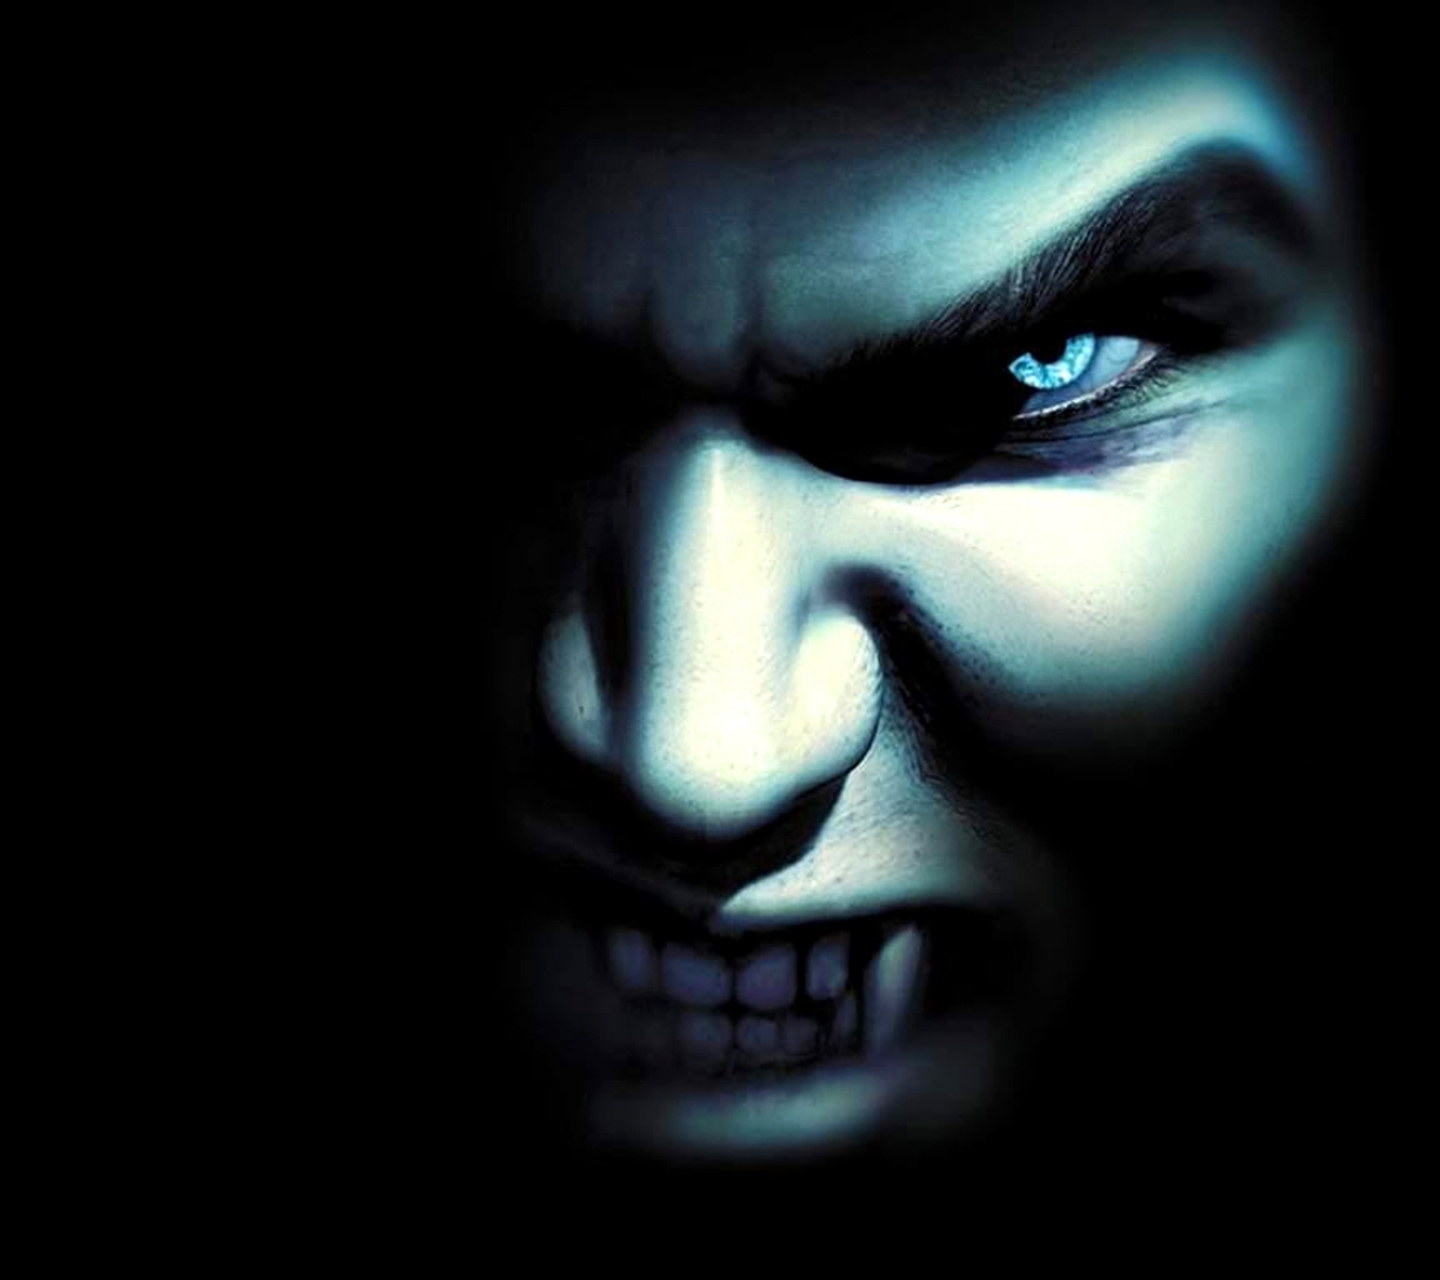 Free download wallpaper Dark, Vampire on your PC desktop